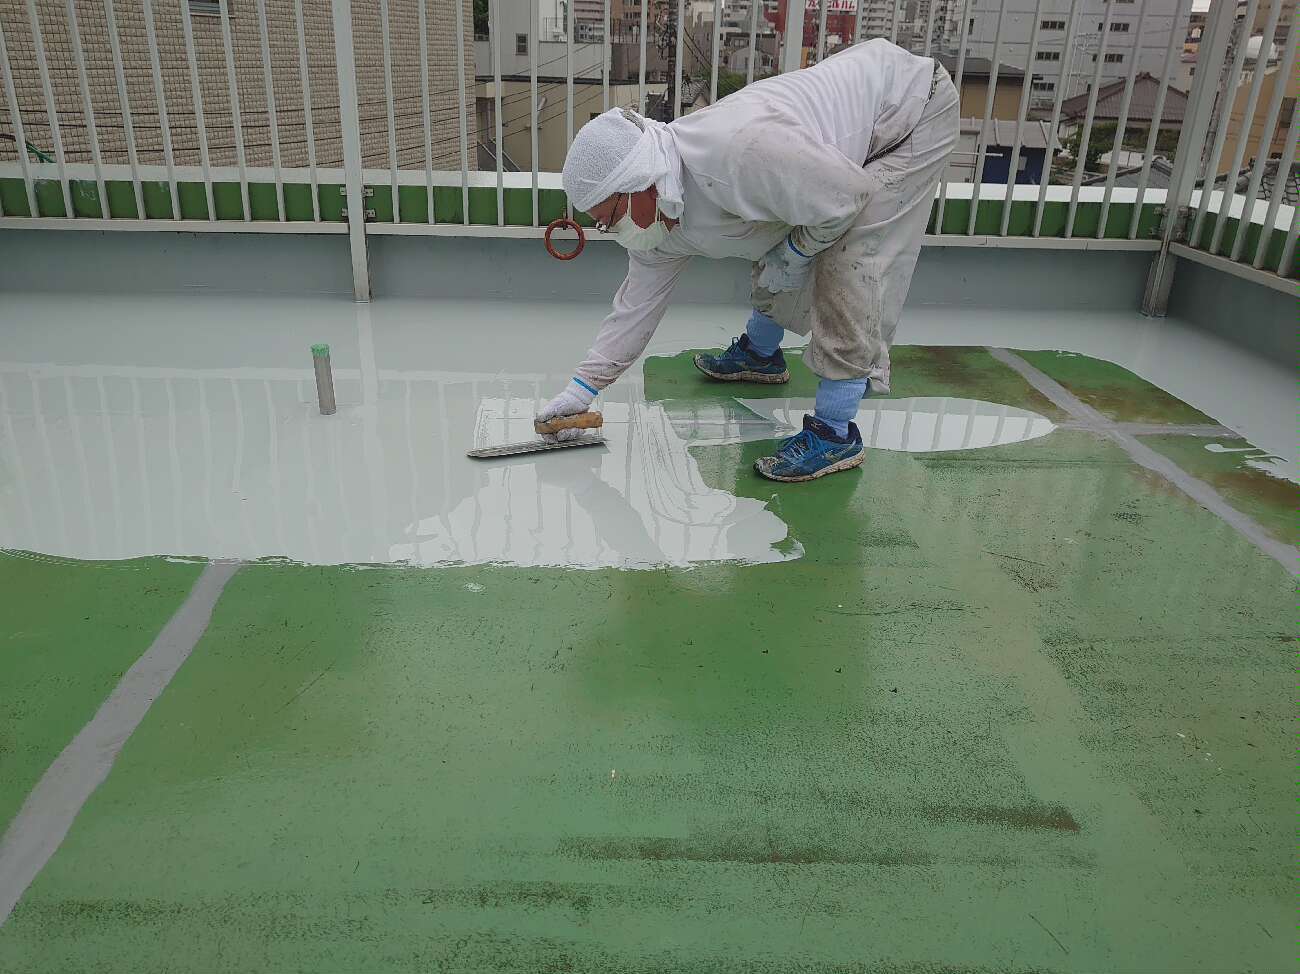 屋上防水 ウレタン防水はどの工法がお勧めですか 東京23区 東京近郊の防水工事なら東京都中央区の東京防水へ